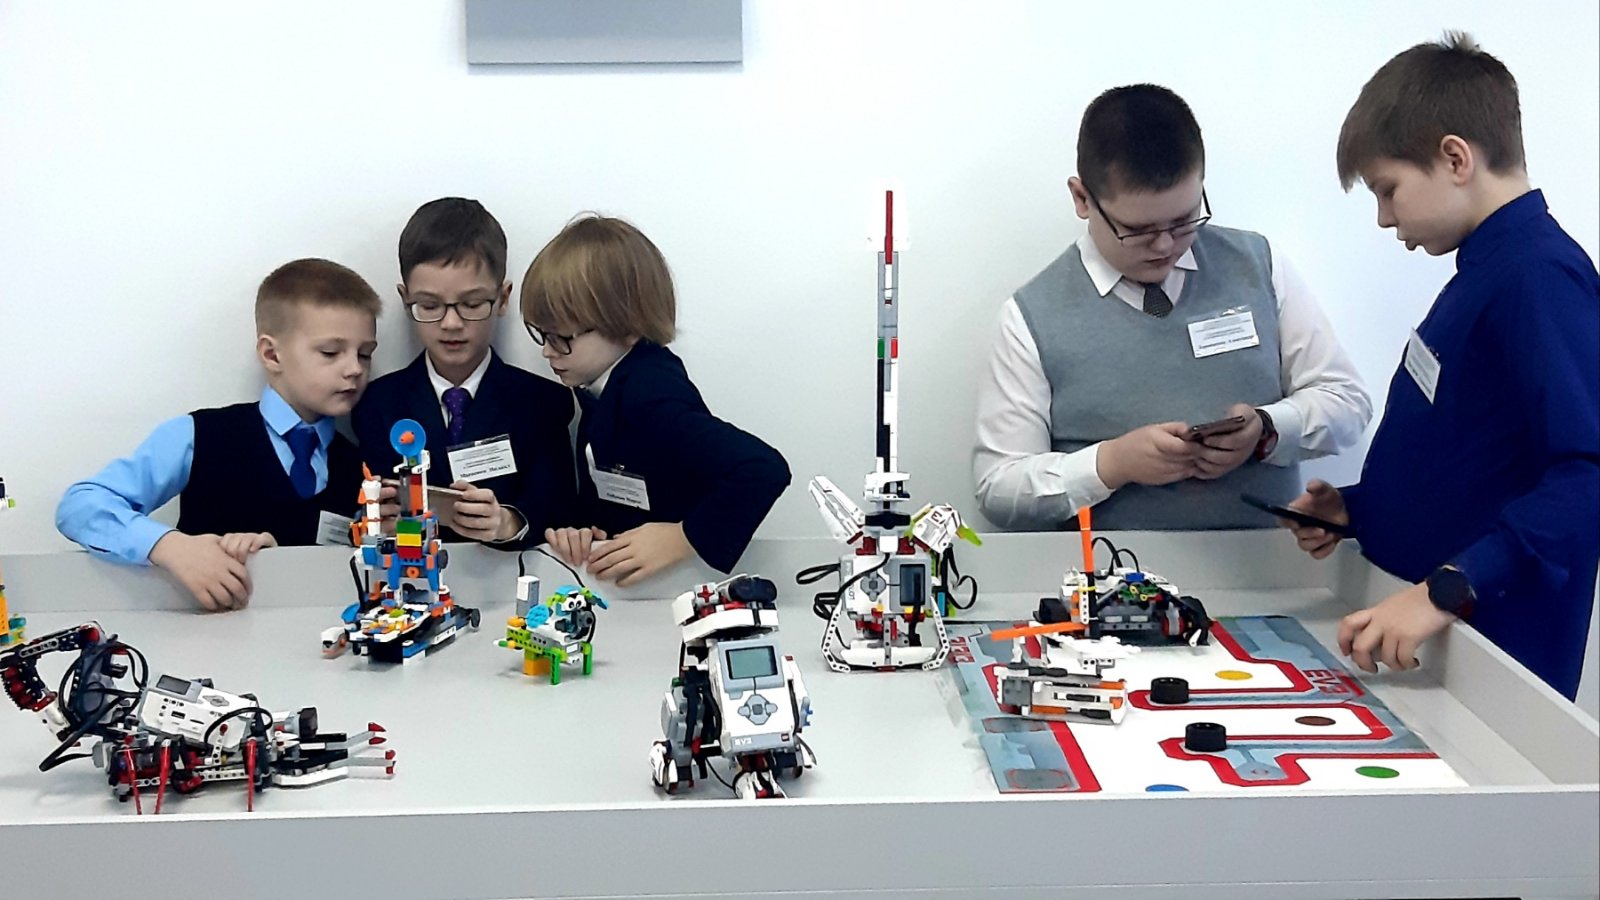 В кружке робототехники занимаются ученики разных классов. Кружок робототехники для детей. Кружки робототехники для детей. Робототехника для детей. Робототехника в детском садуду.